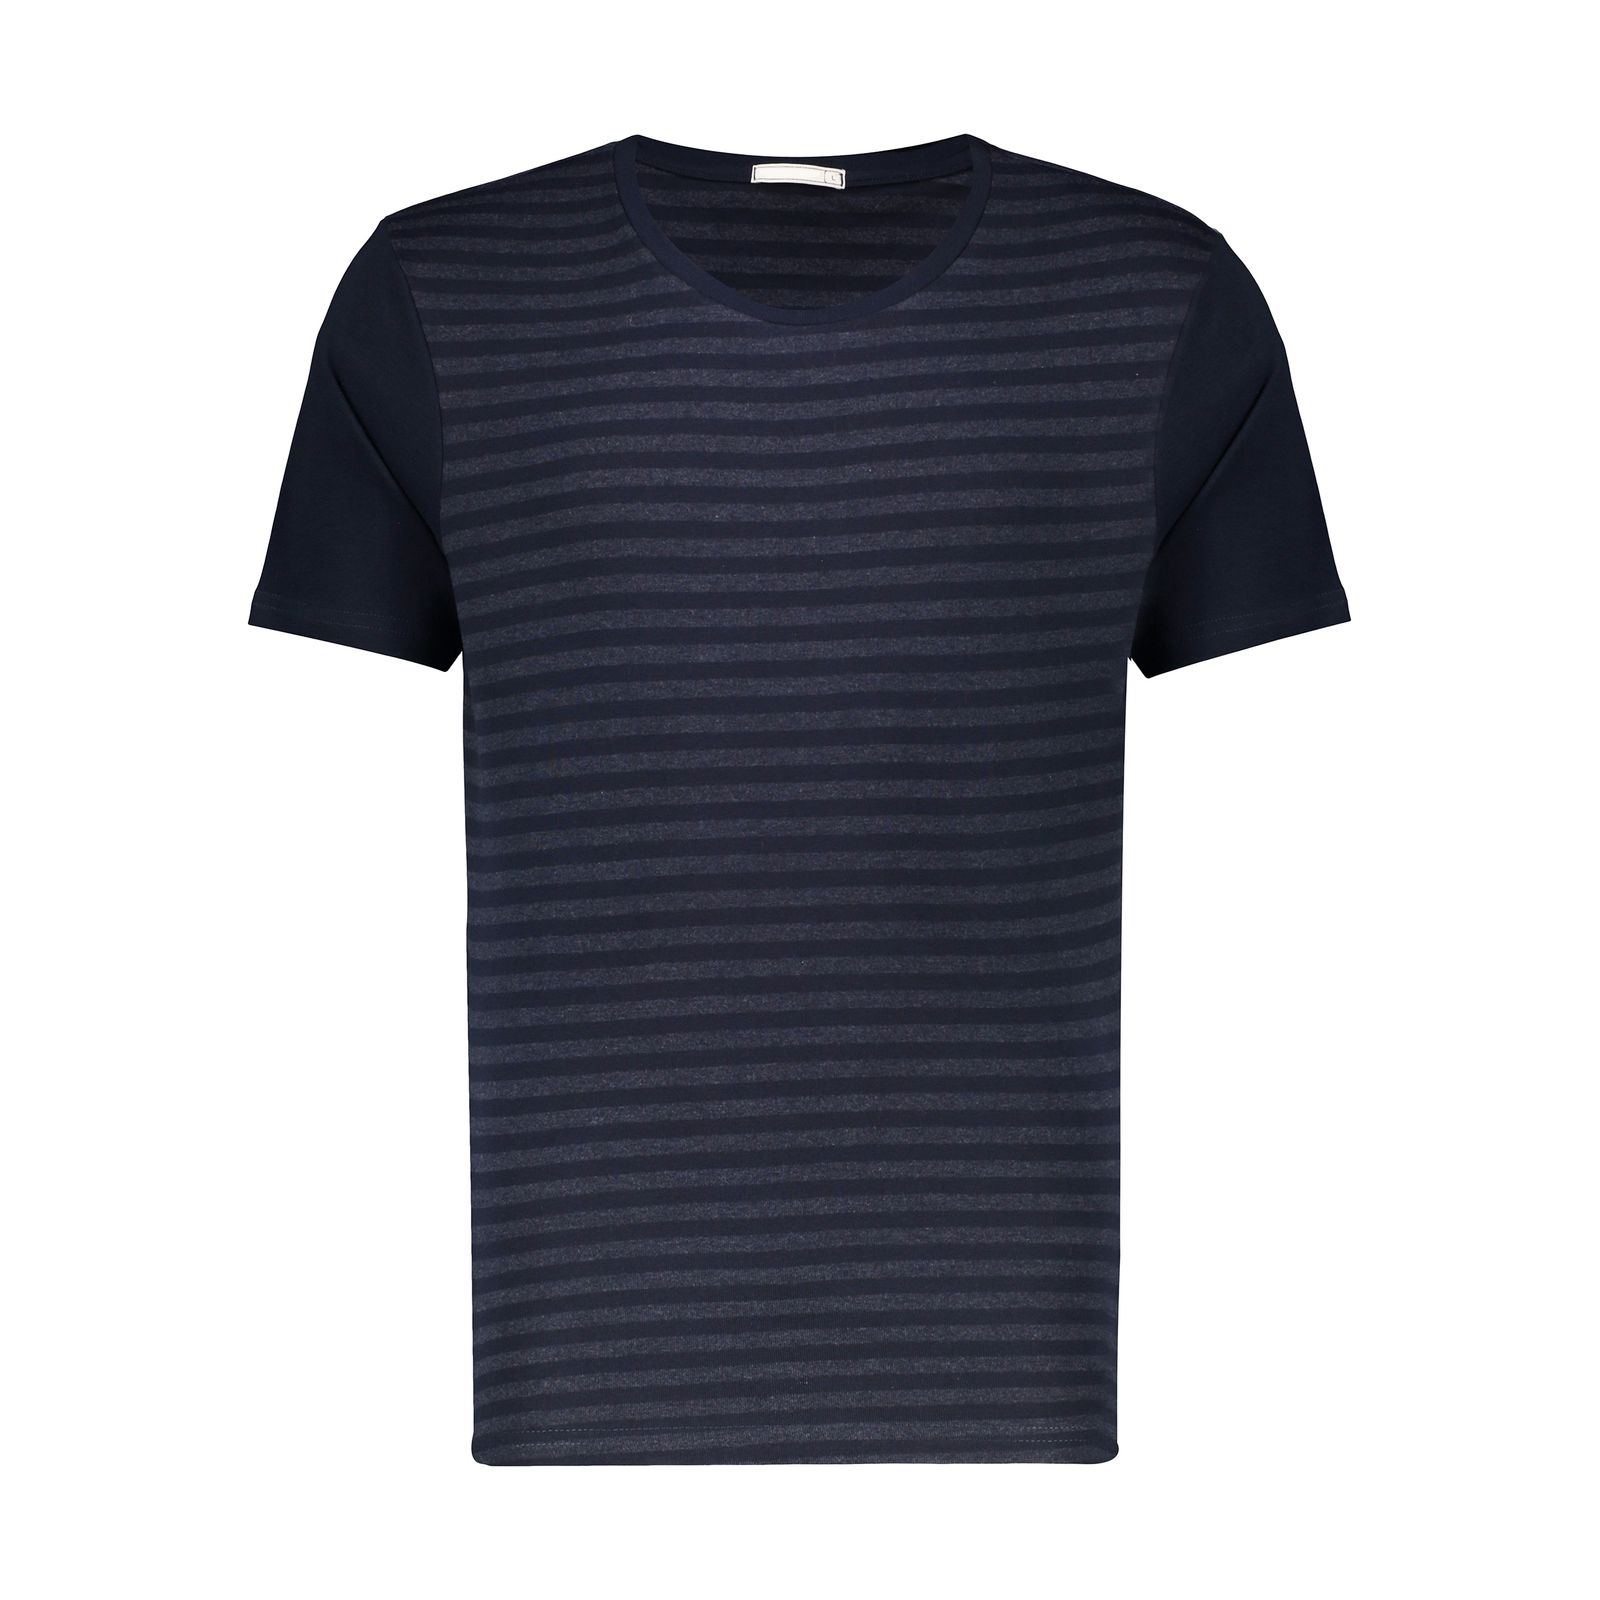 تی شرت آستین کوتاه مردانه دیجی استایل اسنشیال مدل 249112359 -  - 1